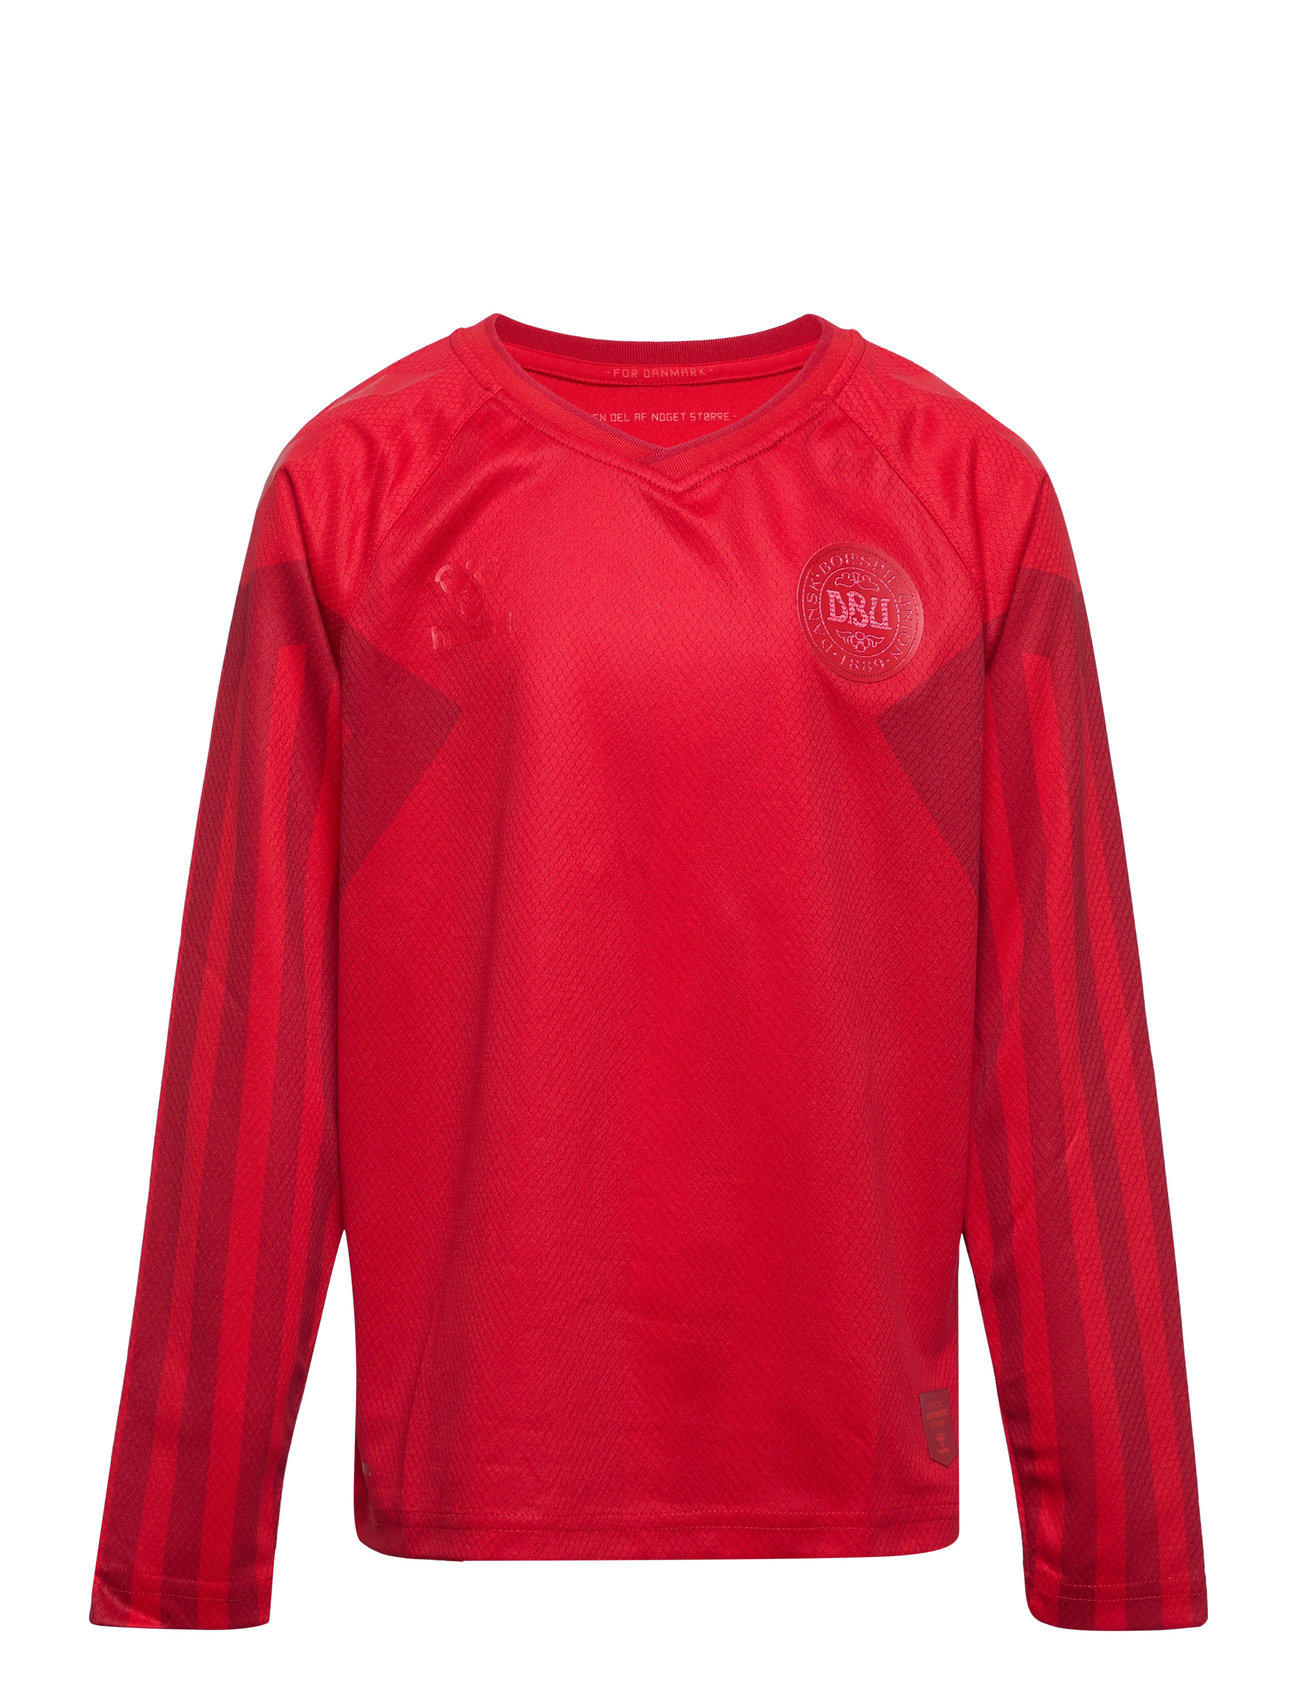 Dbu 22 Landsholdstrøje Børn L/S Home Sport T-shirts Football Shirts Red Hummel